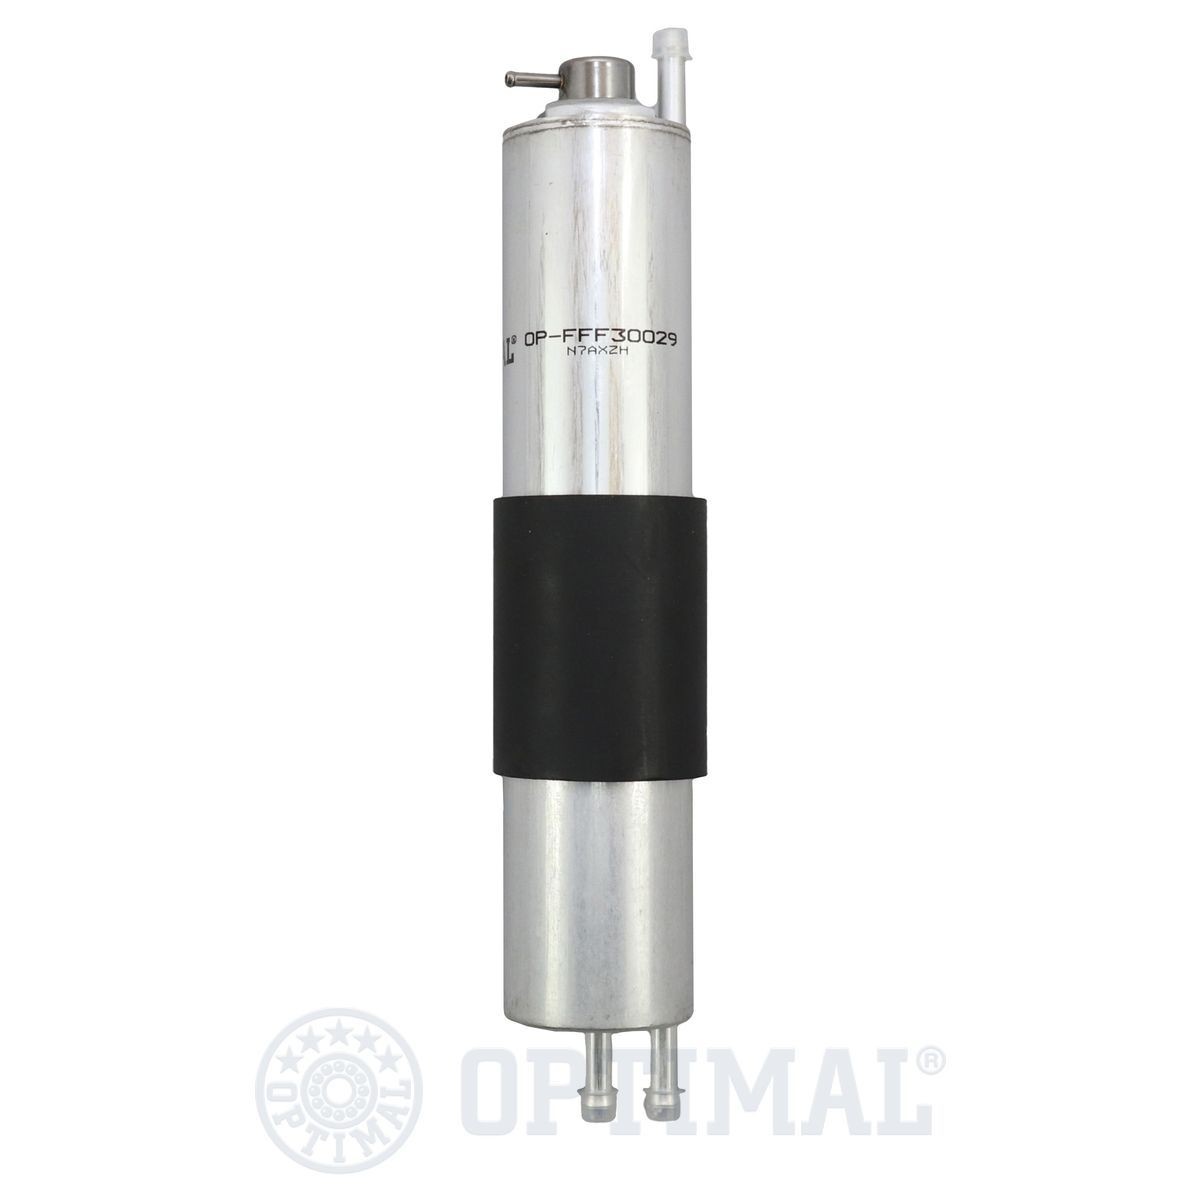 OPTIMAL OP-FFF30029 Fuel filter 13-32-1-439-407